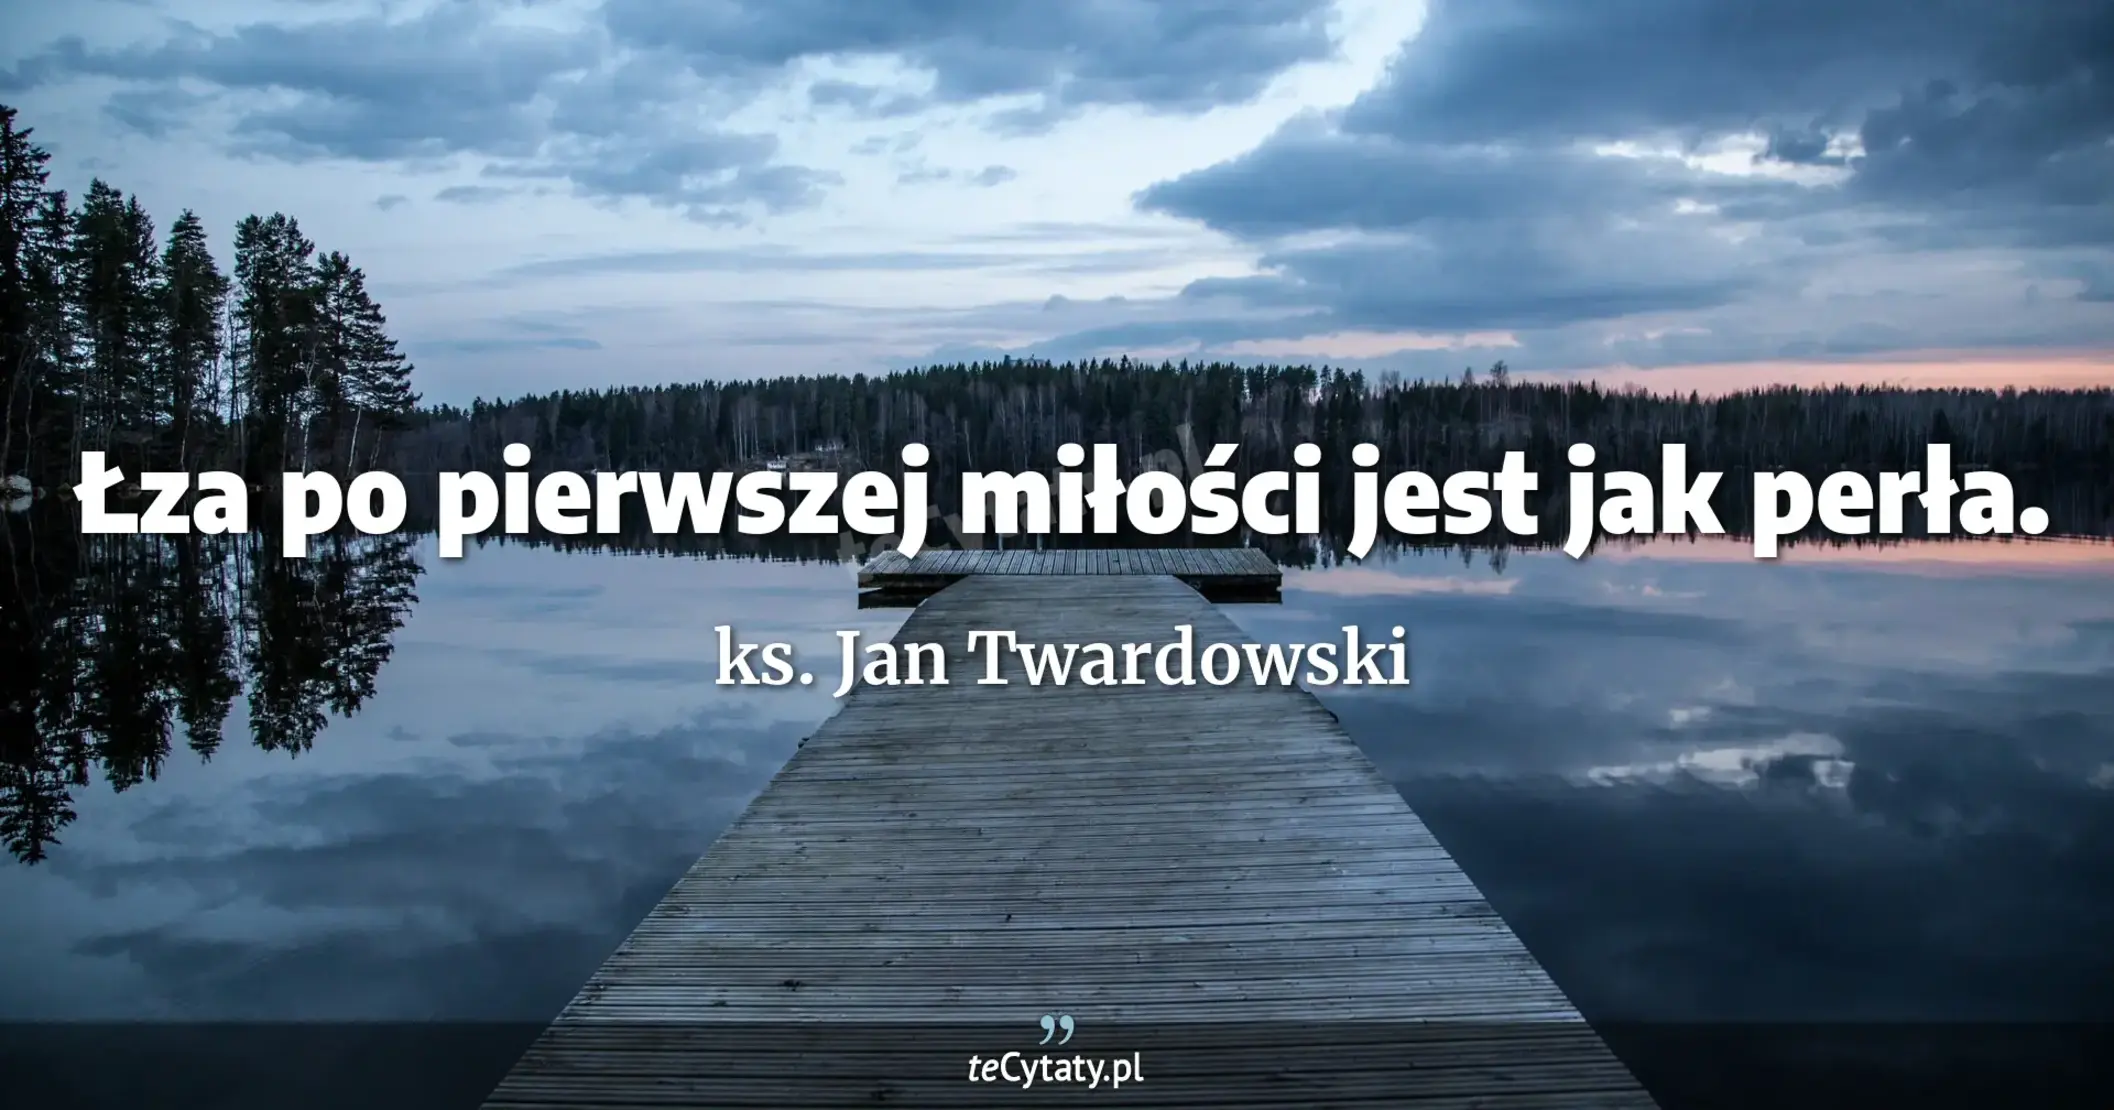 Łza po pierwszej miłości jest jak perła. - ks. Jan Twardowski